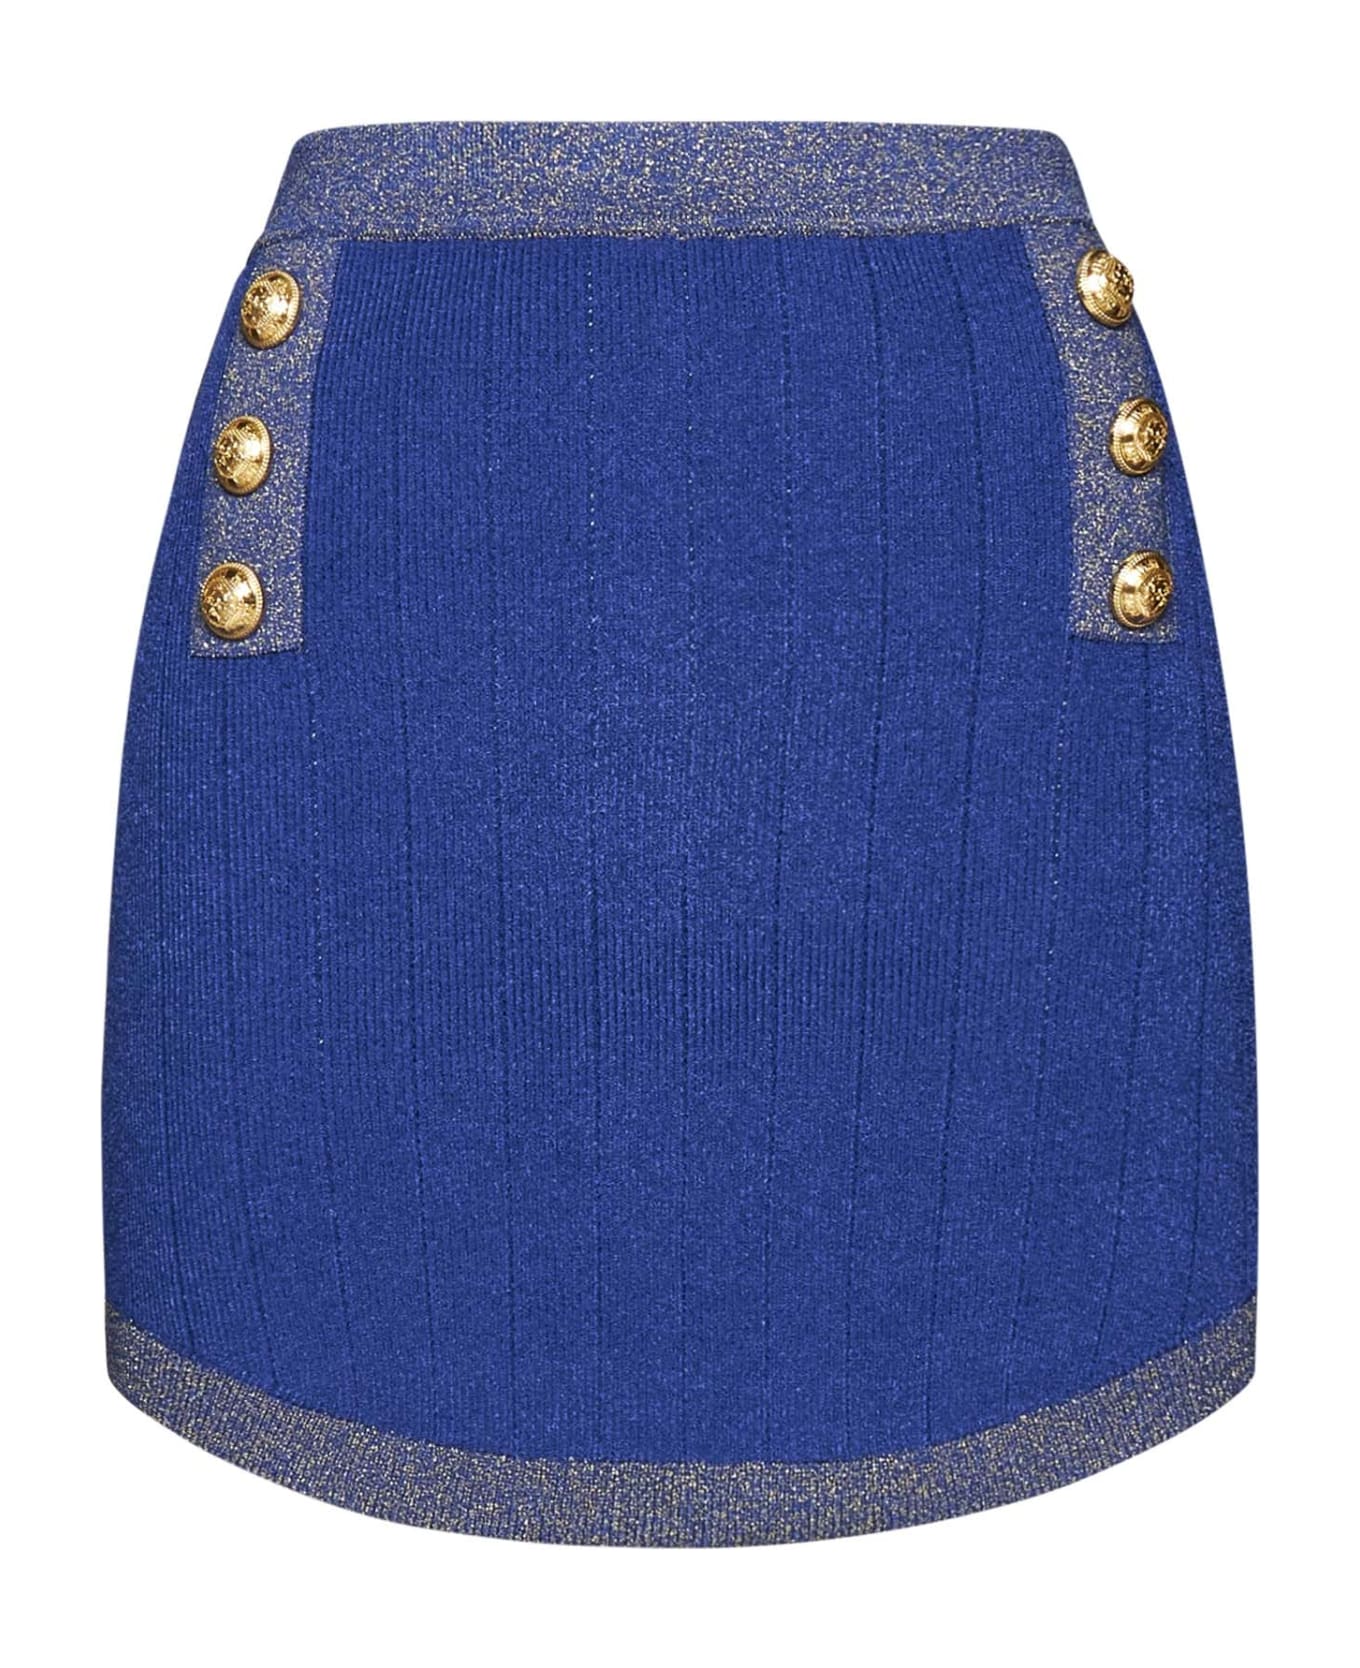 Balmain Skirt - Bleu fonce or